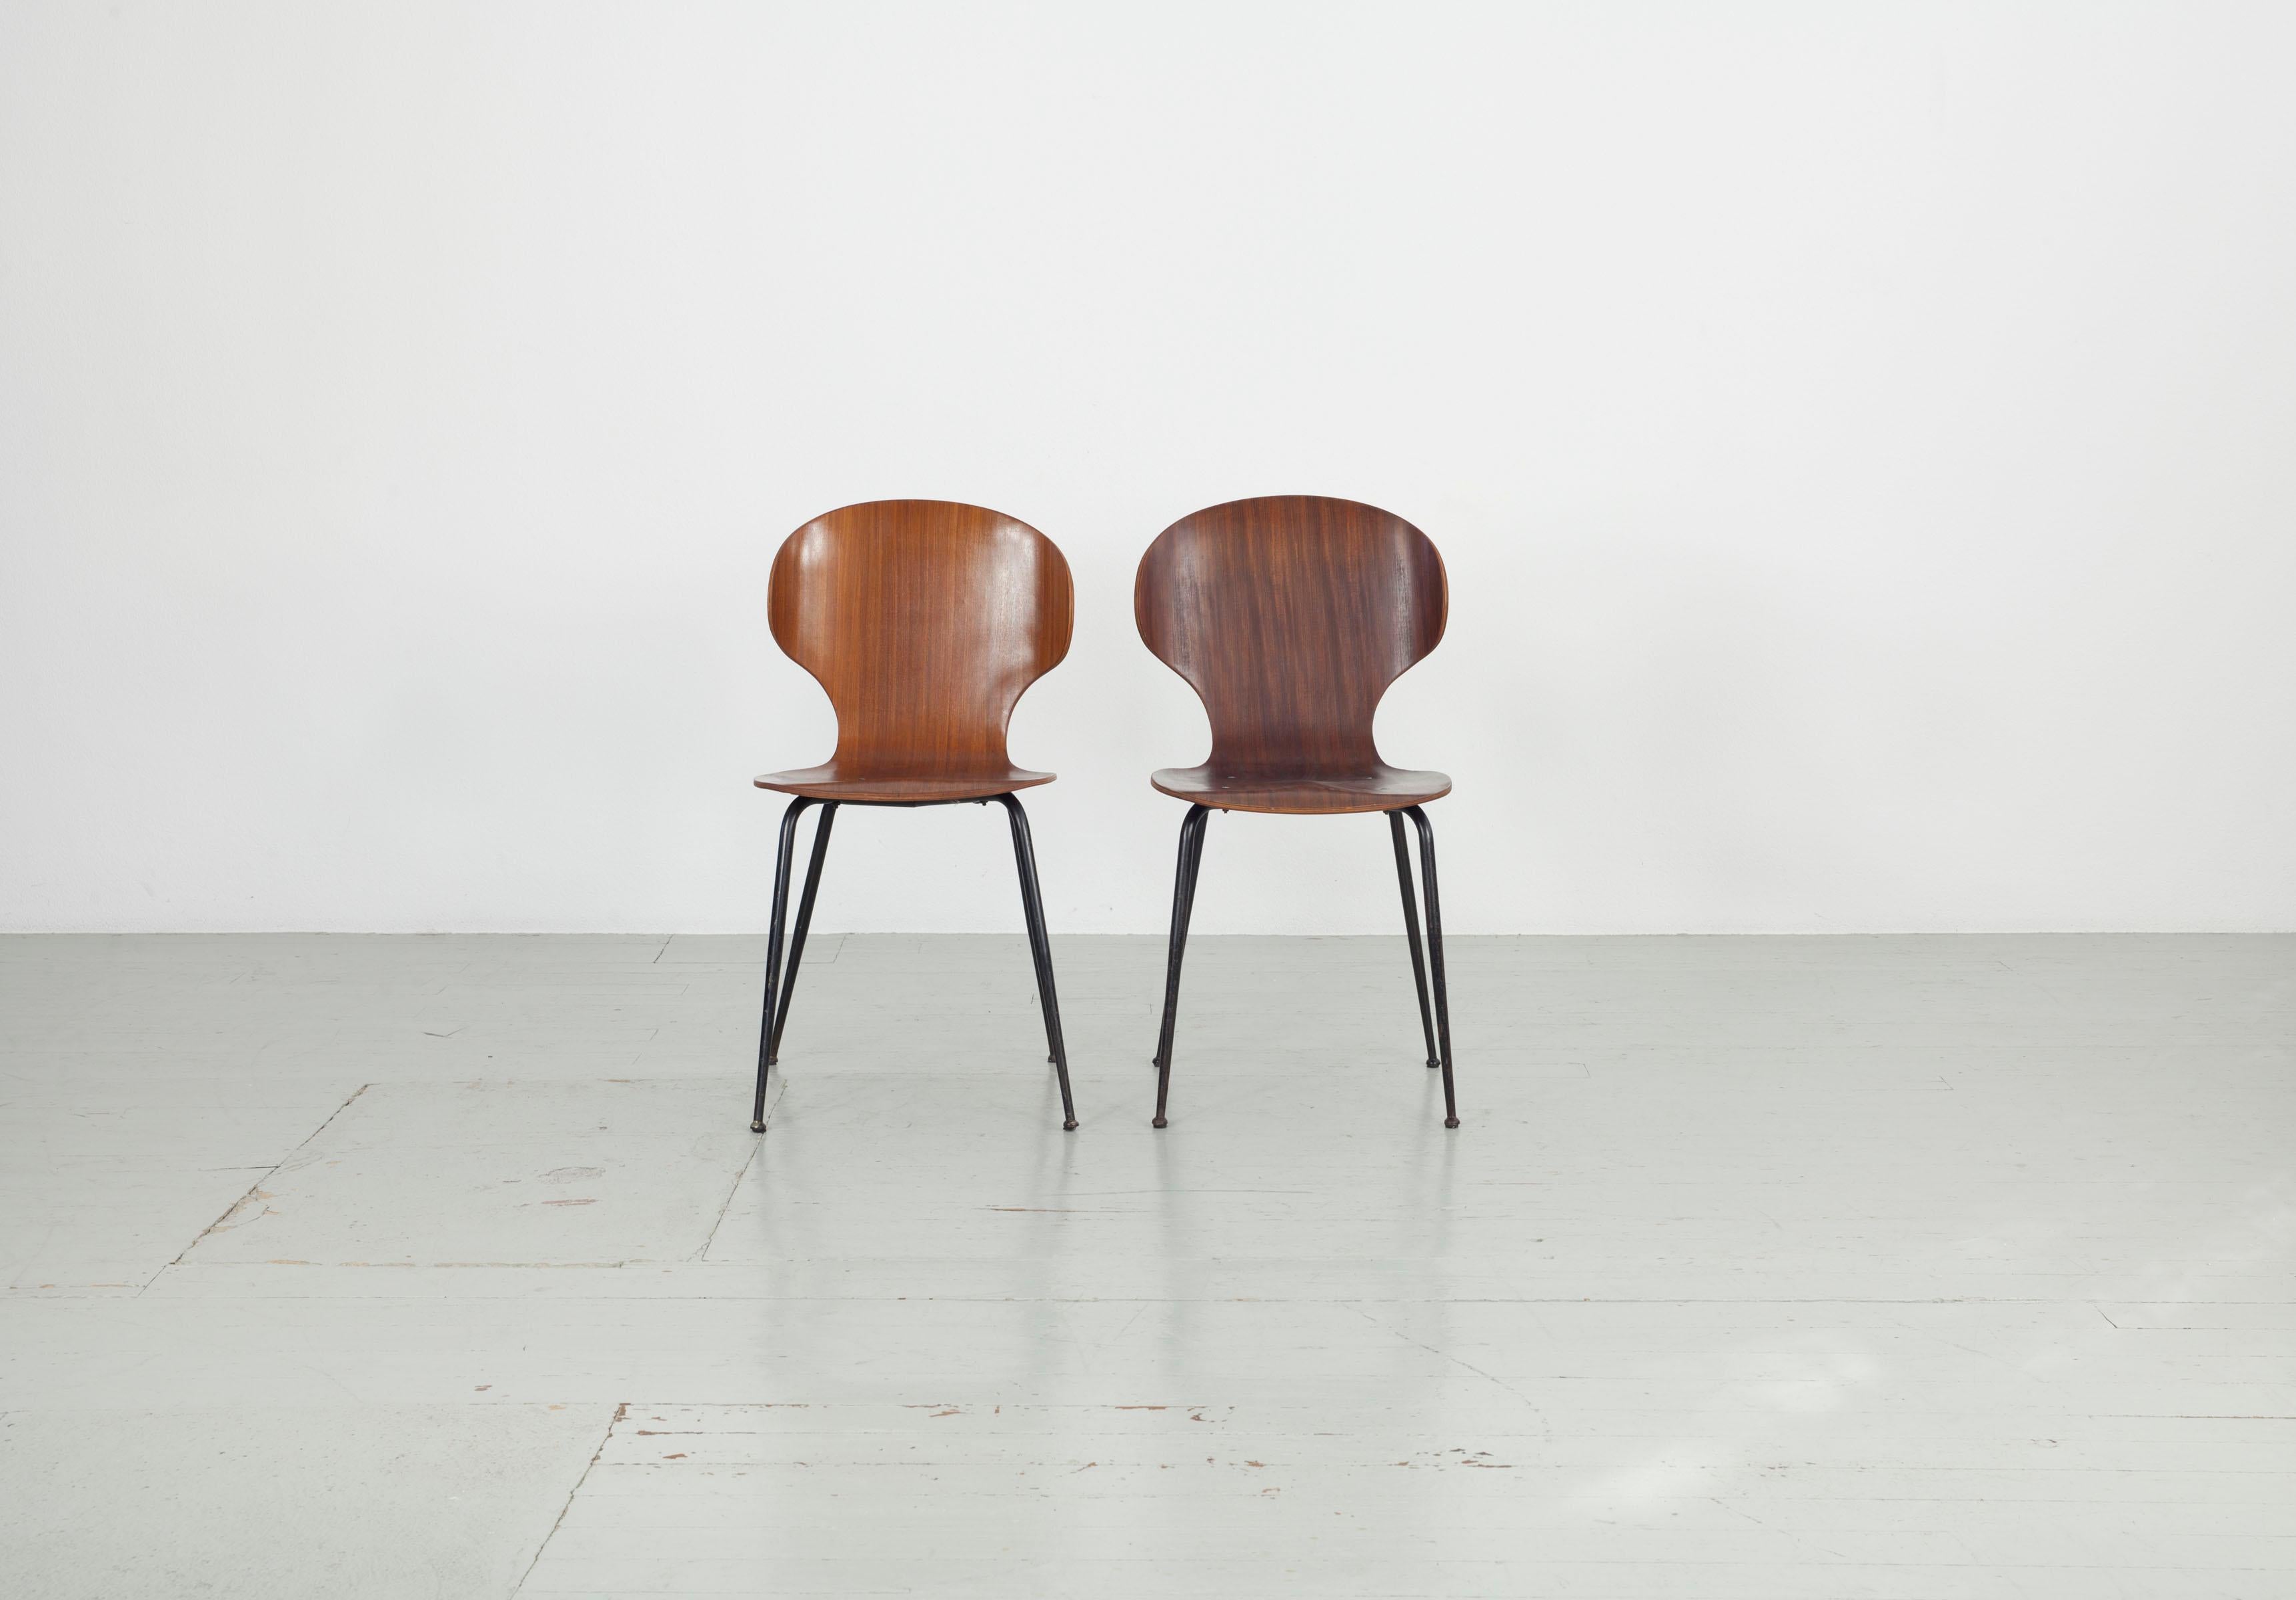 Dieses italienische Stuhlmodell wurde in den 1950er Jahren von Carlo Ratti für Industira Legni Curvati Lissoni entworfen und besteht aus Bugholz und schwarz lackierten Metallbeinen. Die abgerundeten Formen und dünnen Beine verleihen dem Stuhl